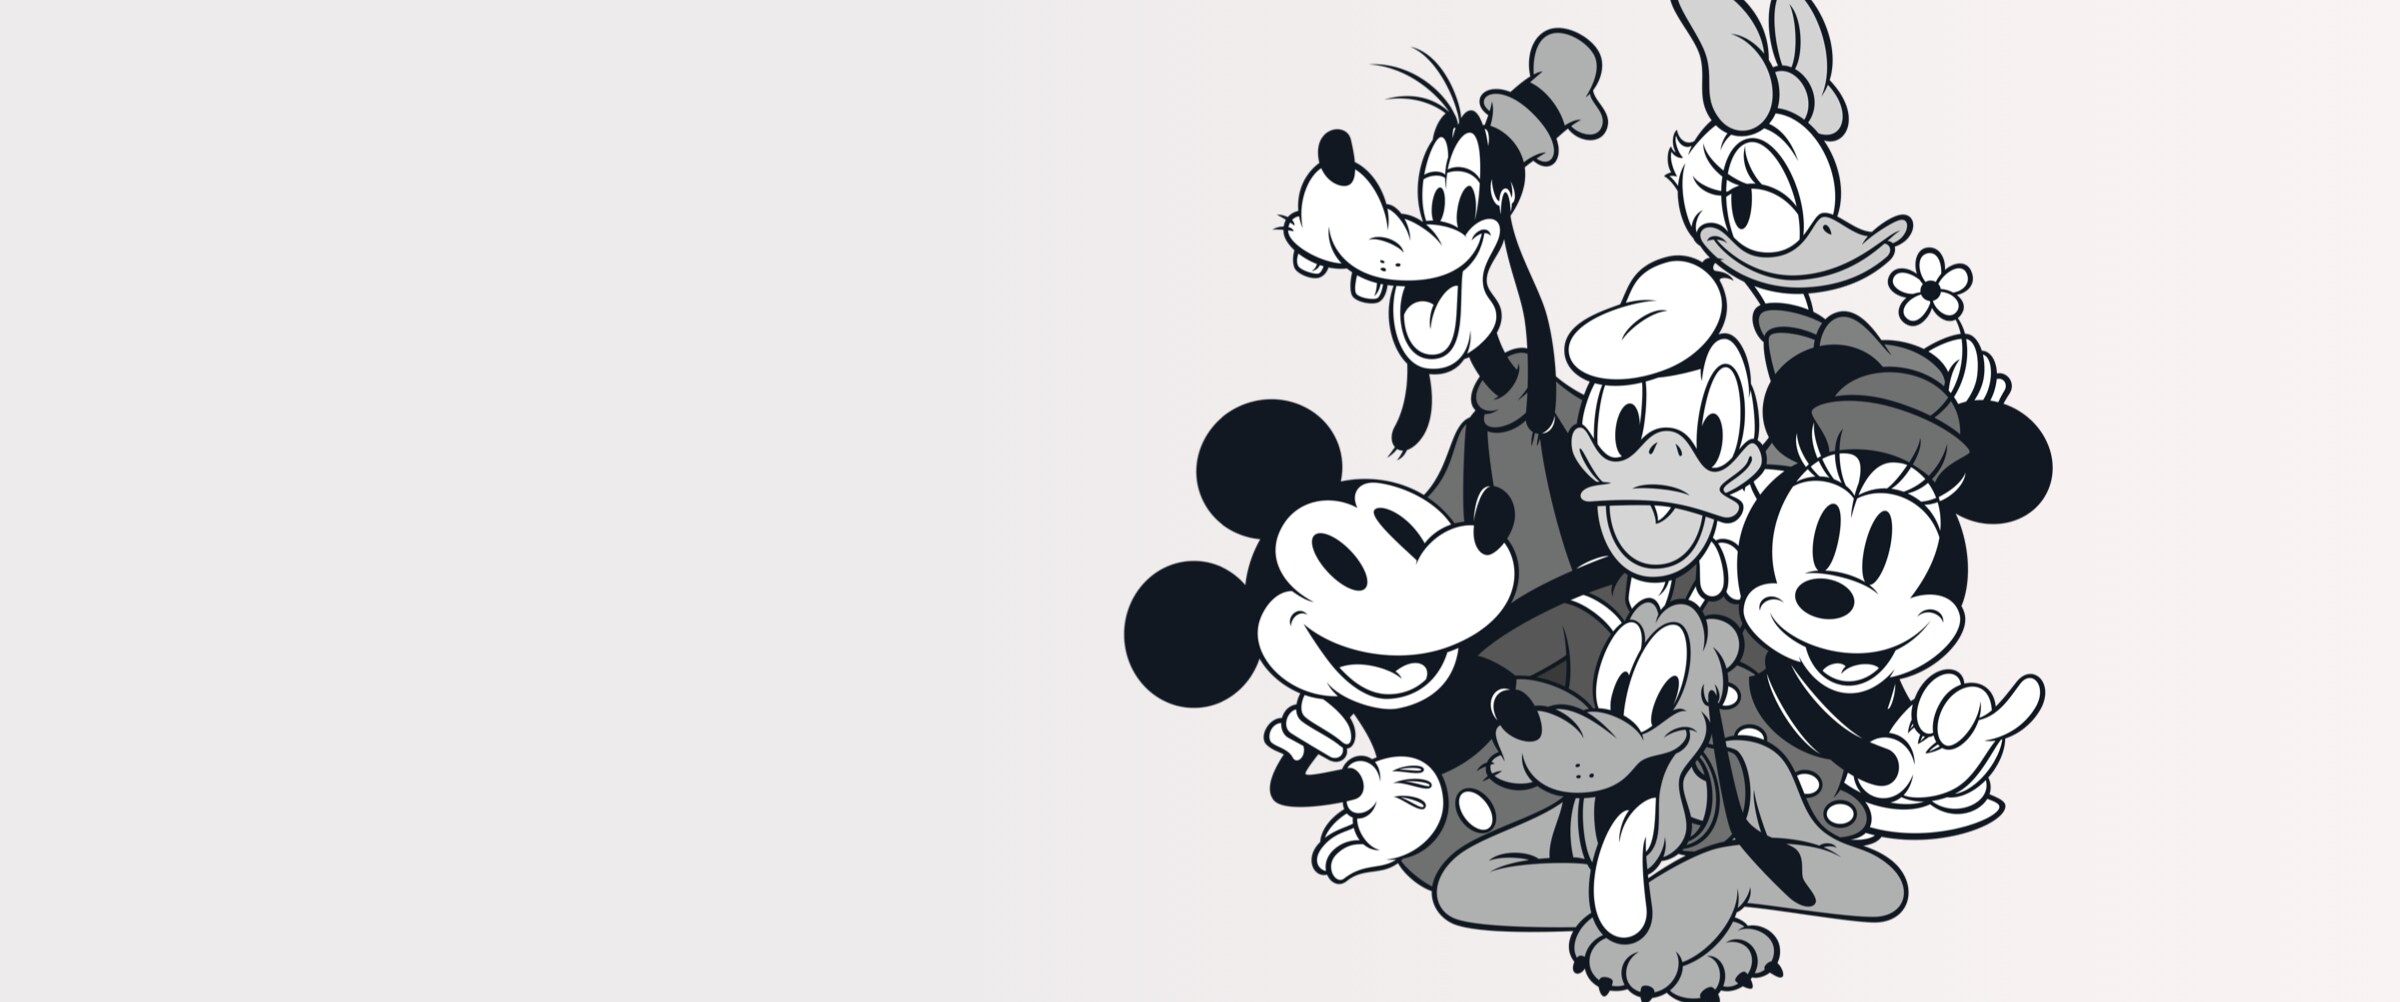 Mikie mouse - Der TOP-Favorit unserer Redaktion